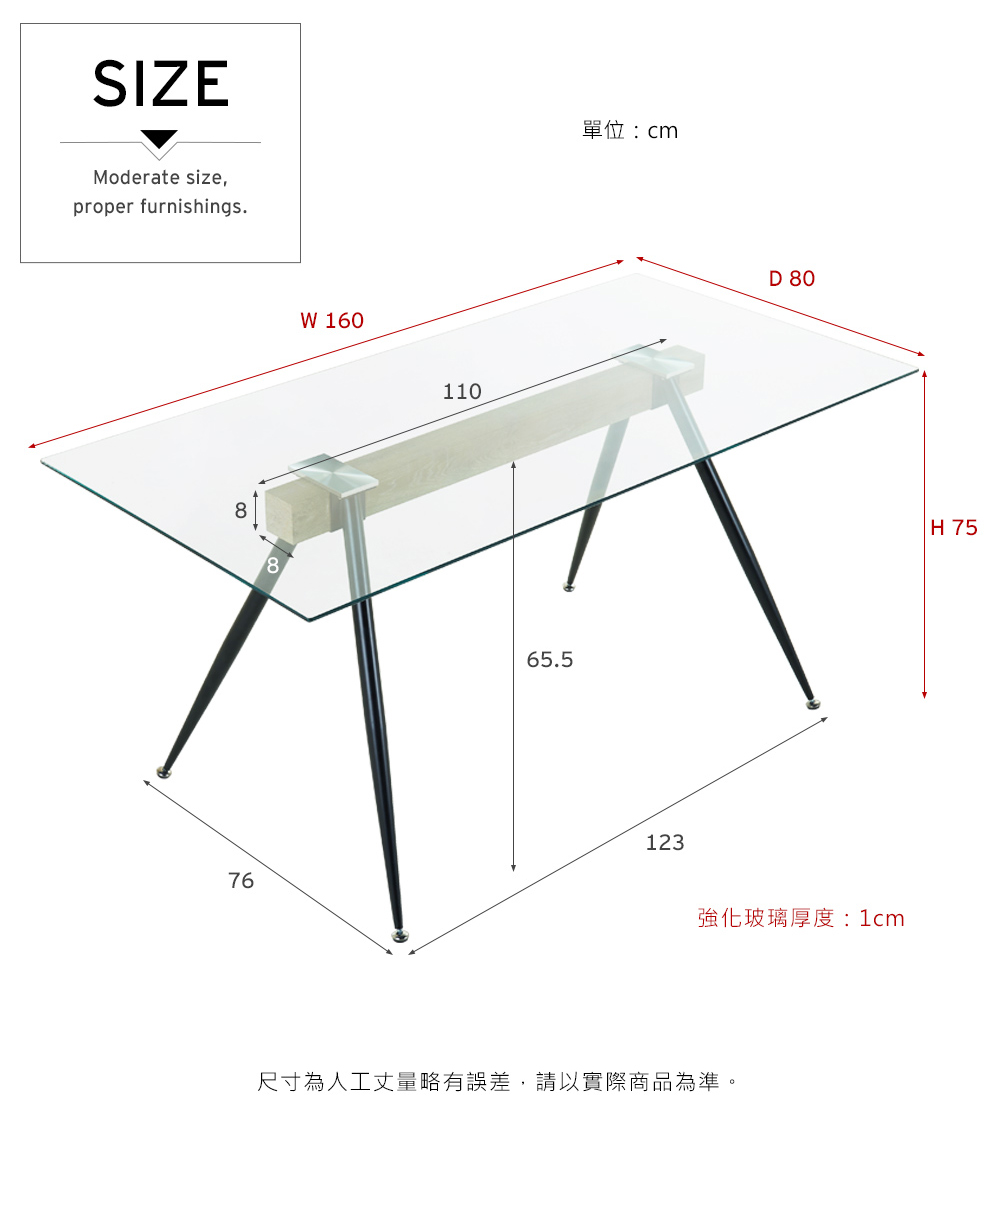 奧爾頓簡約工業風玻璃餐桌(MLM/170337玻璃餐桌)【obis】